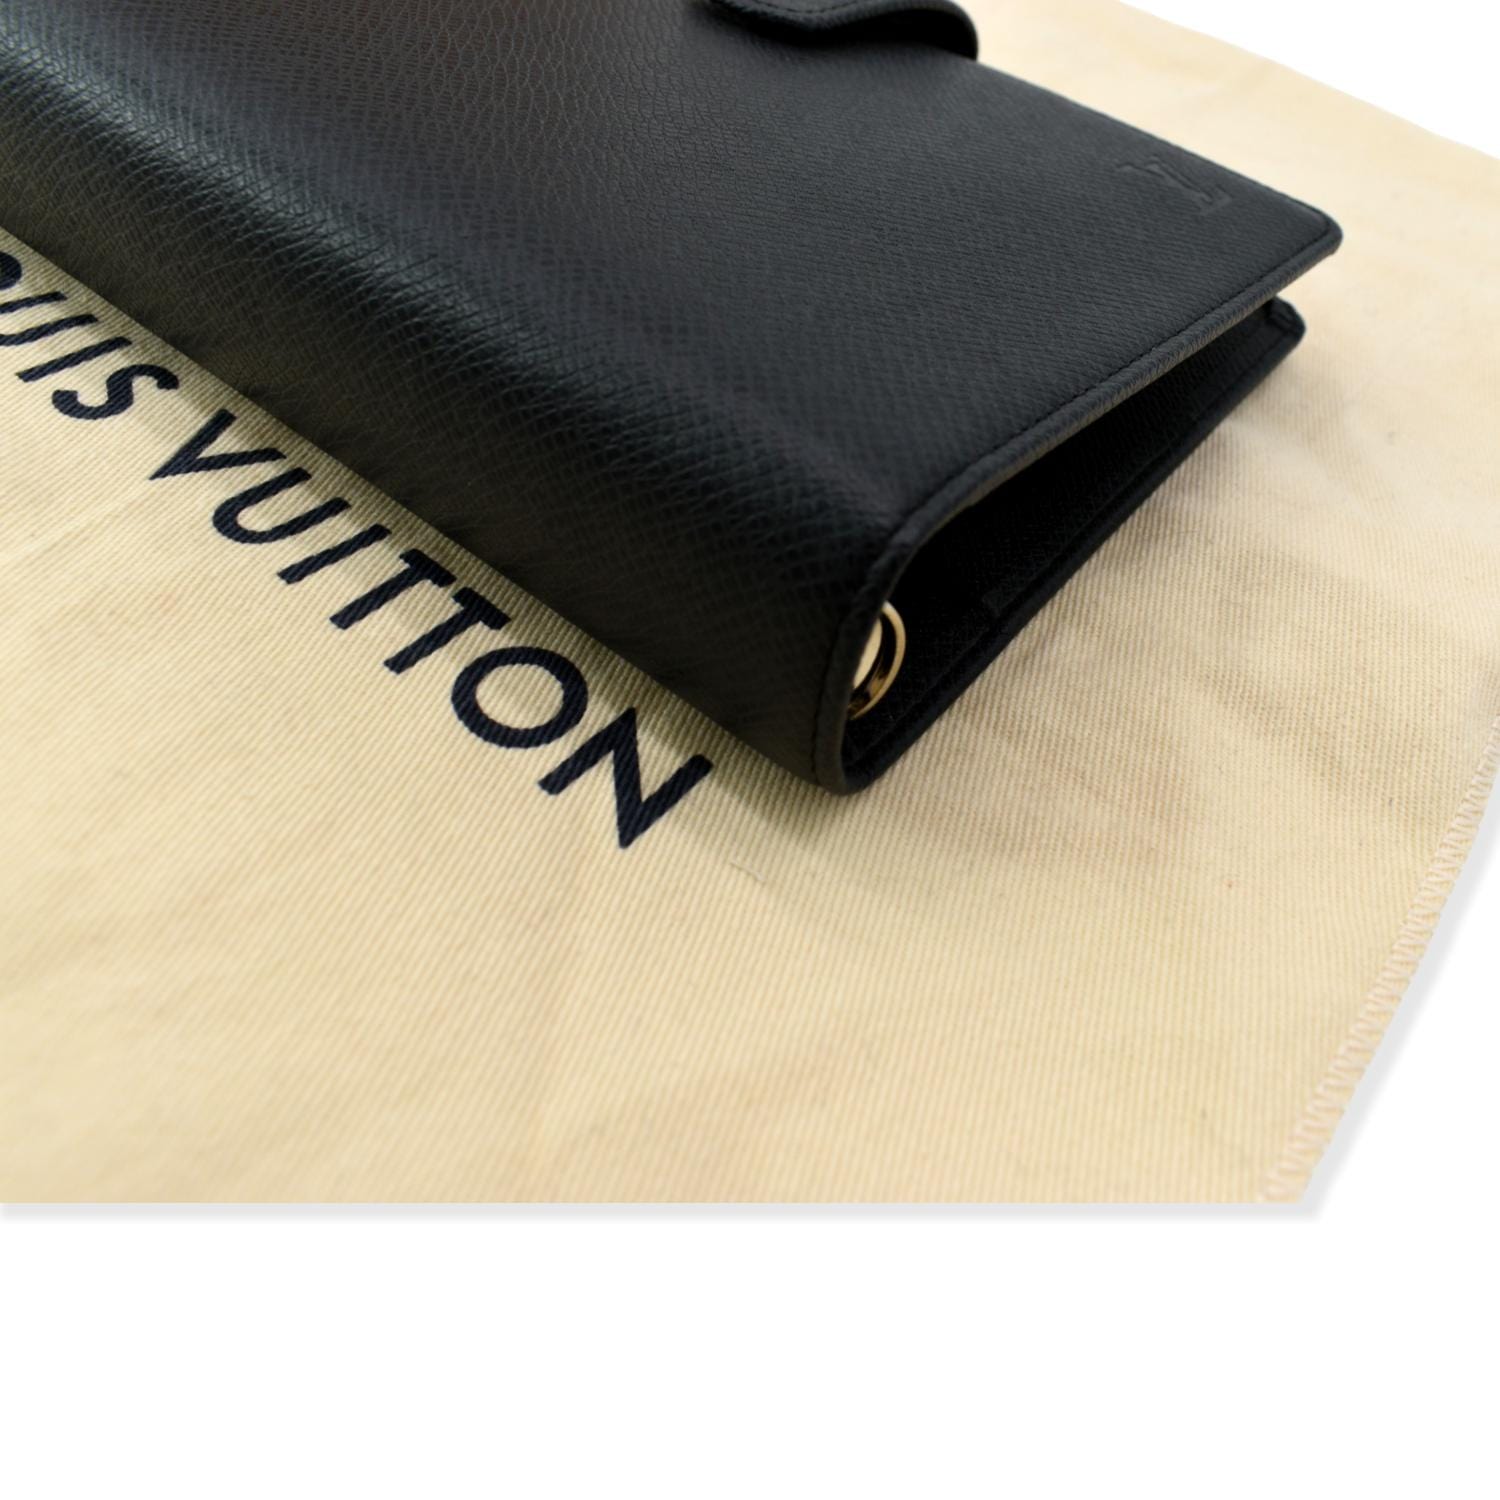 Louis Vuitton Black Taiga Leather Agenda PM Wallet